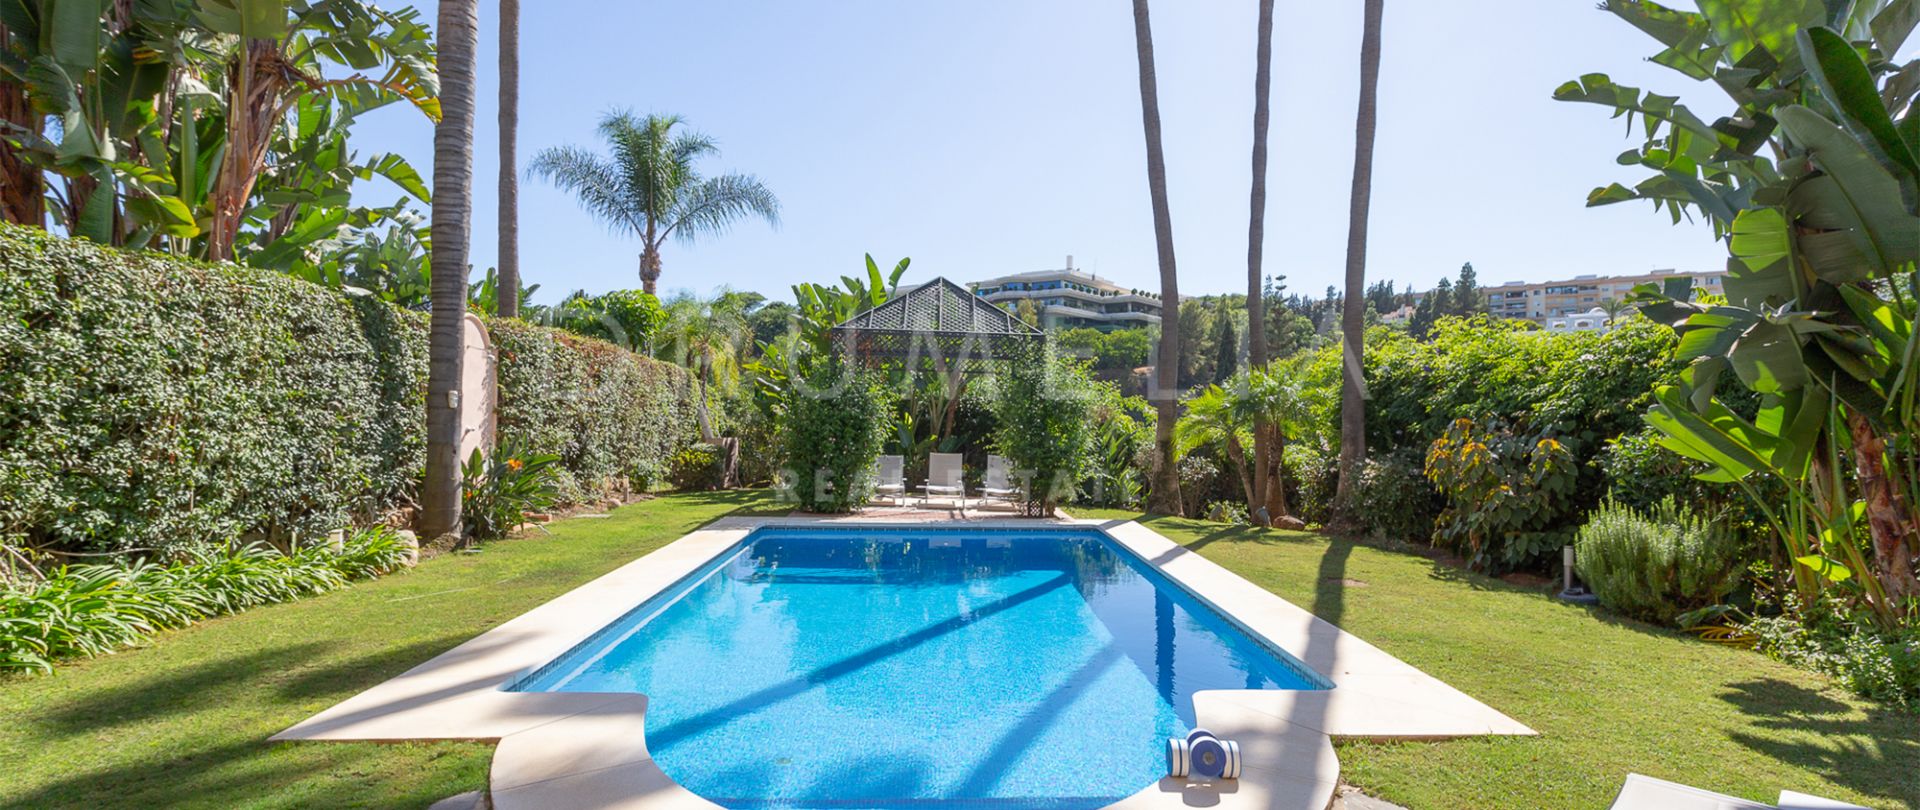 Belle villa familiale rénovée de style méditerranéen à vendre à Puerto Banús, Marbella.